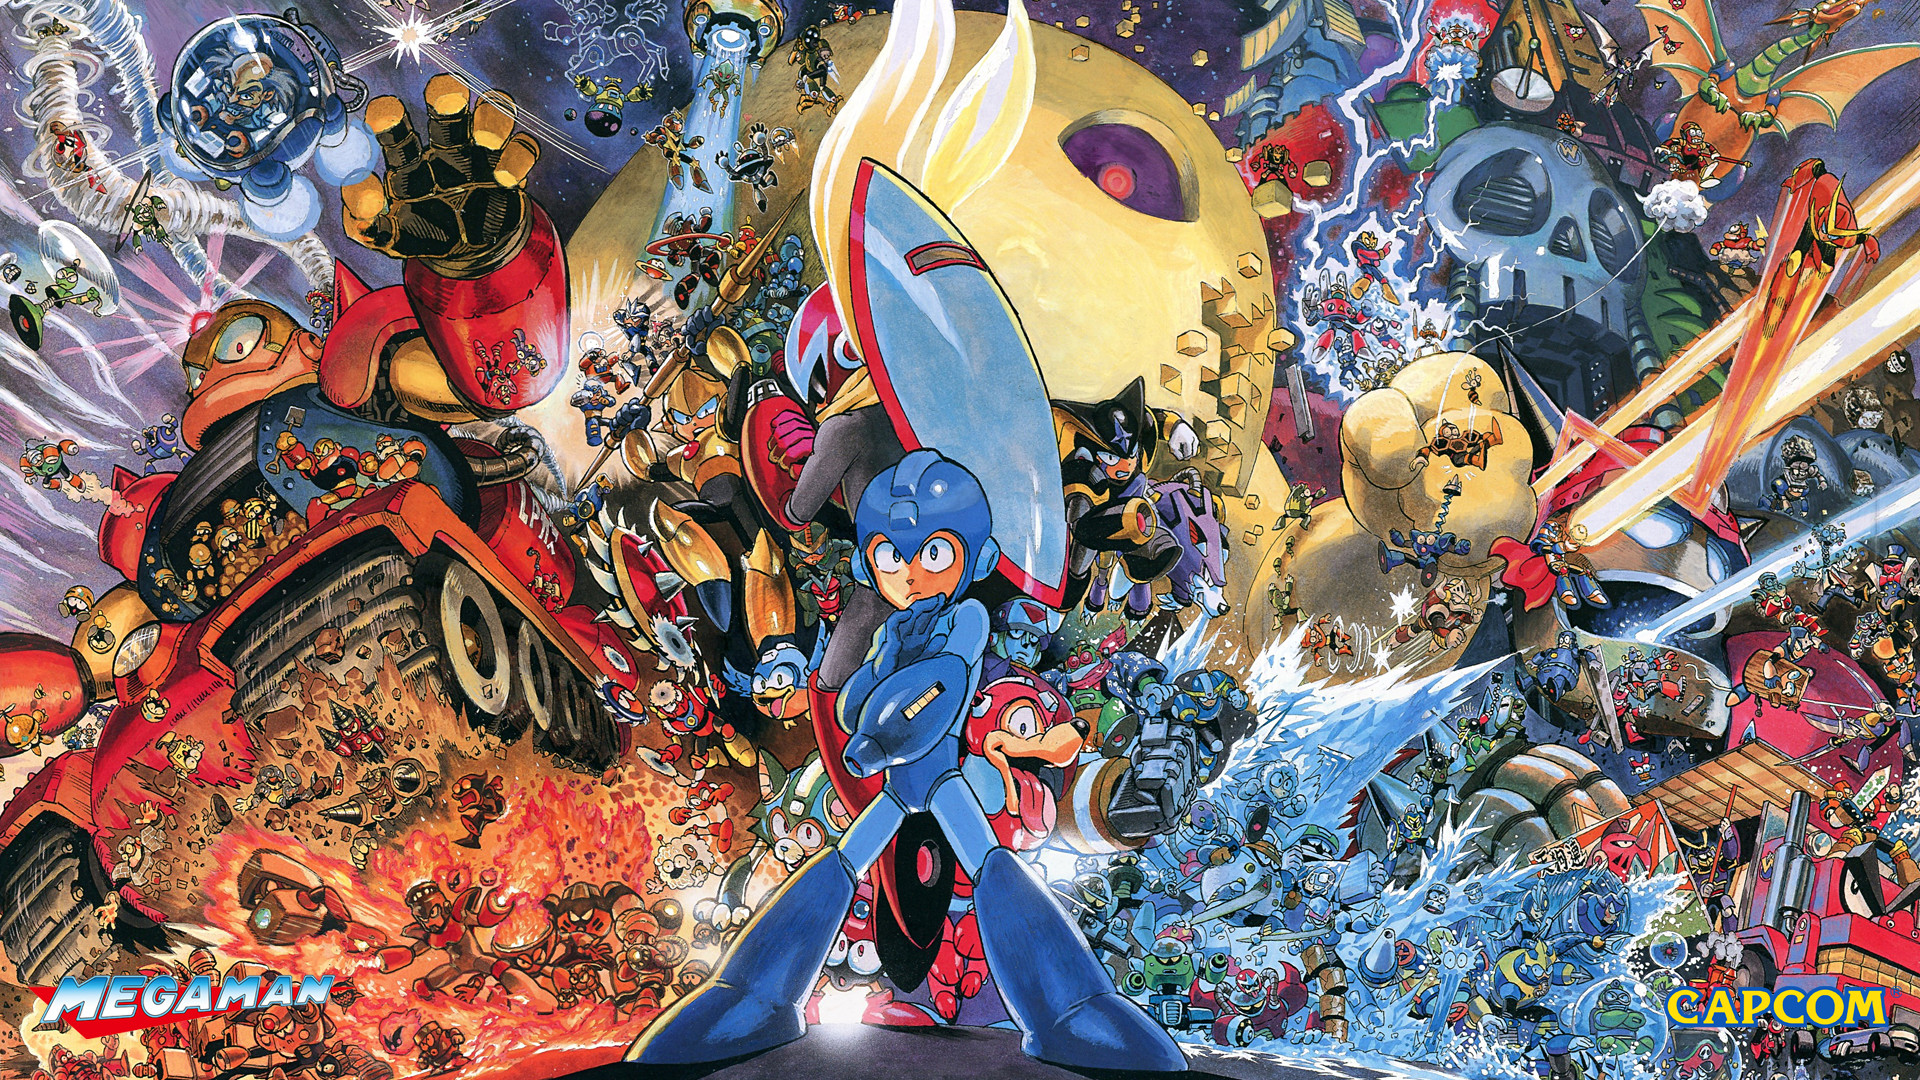 1920x1080, Mm Heroes Of Capcom Wallpaper 
 Data Id - Mega Man Yusuke Murata - HD Wallpaper 